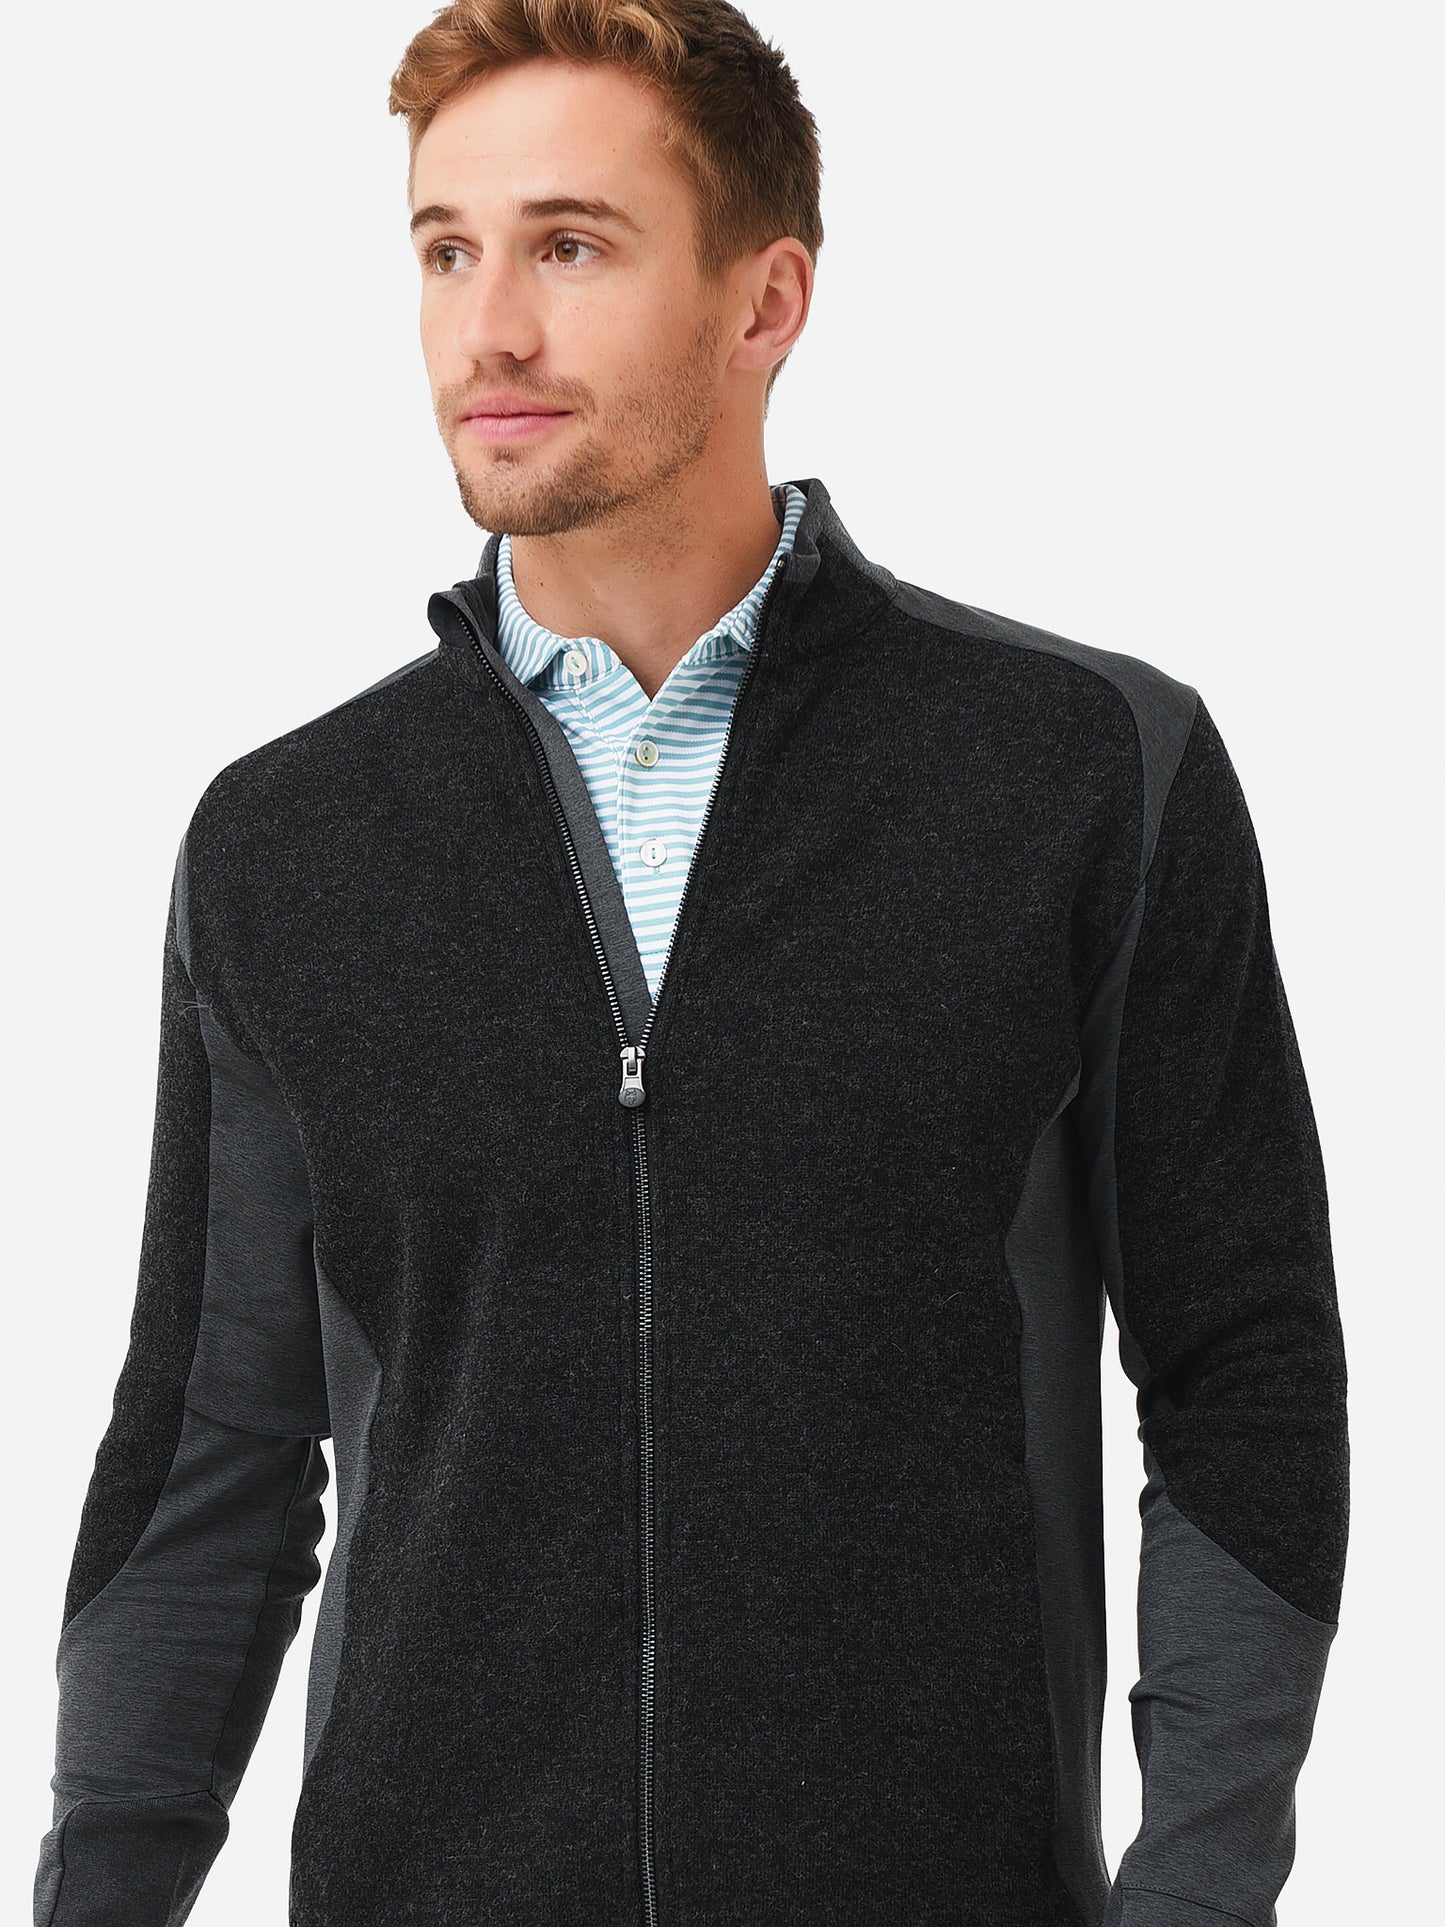 Greyson Men's Sequoia Luxe Hybrid Full-Zip Jacket